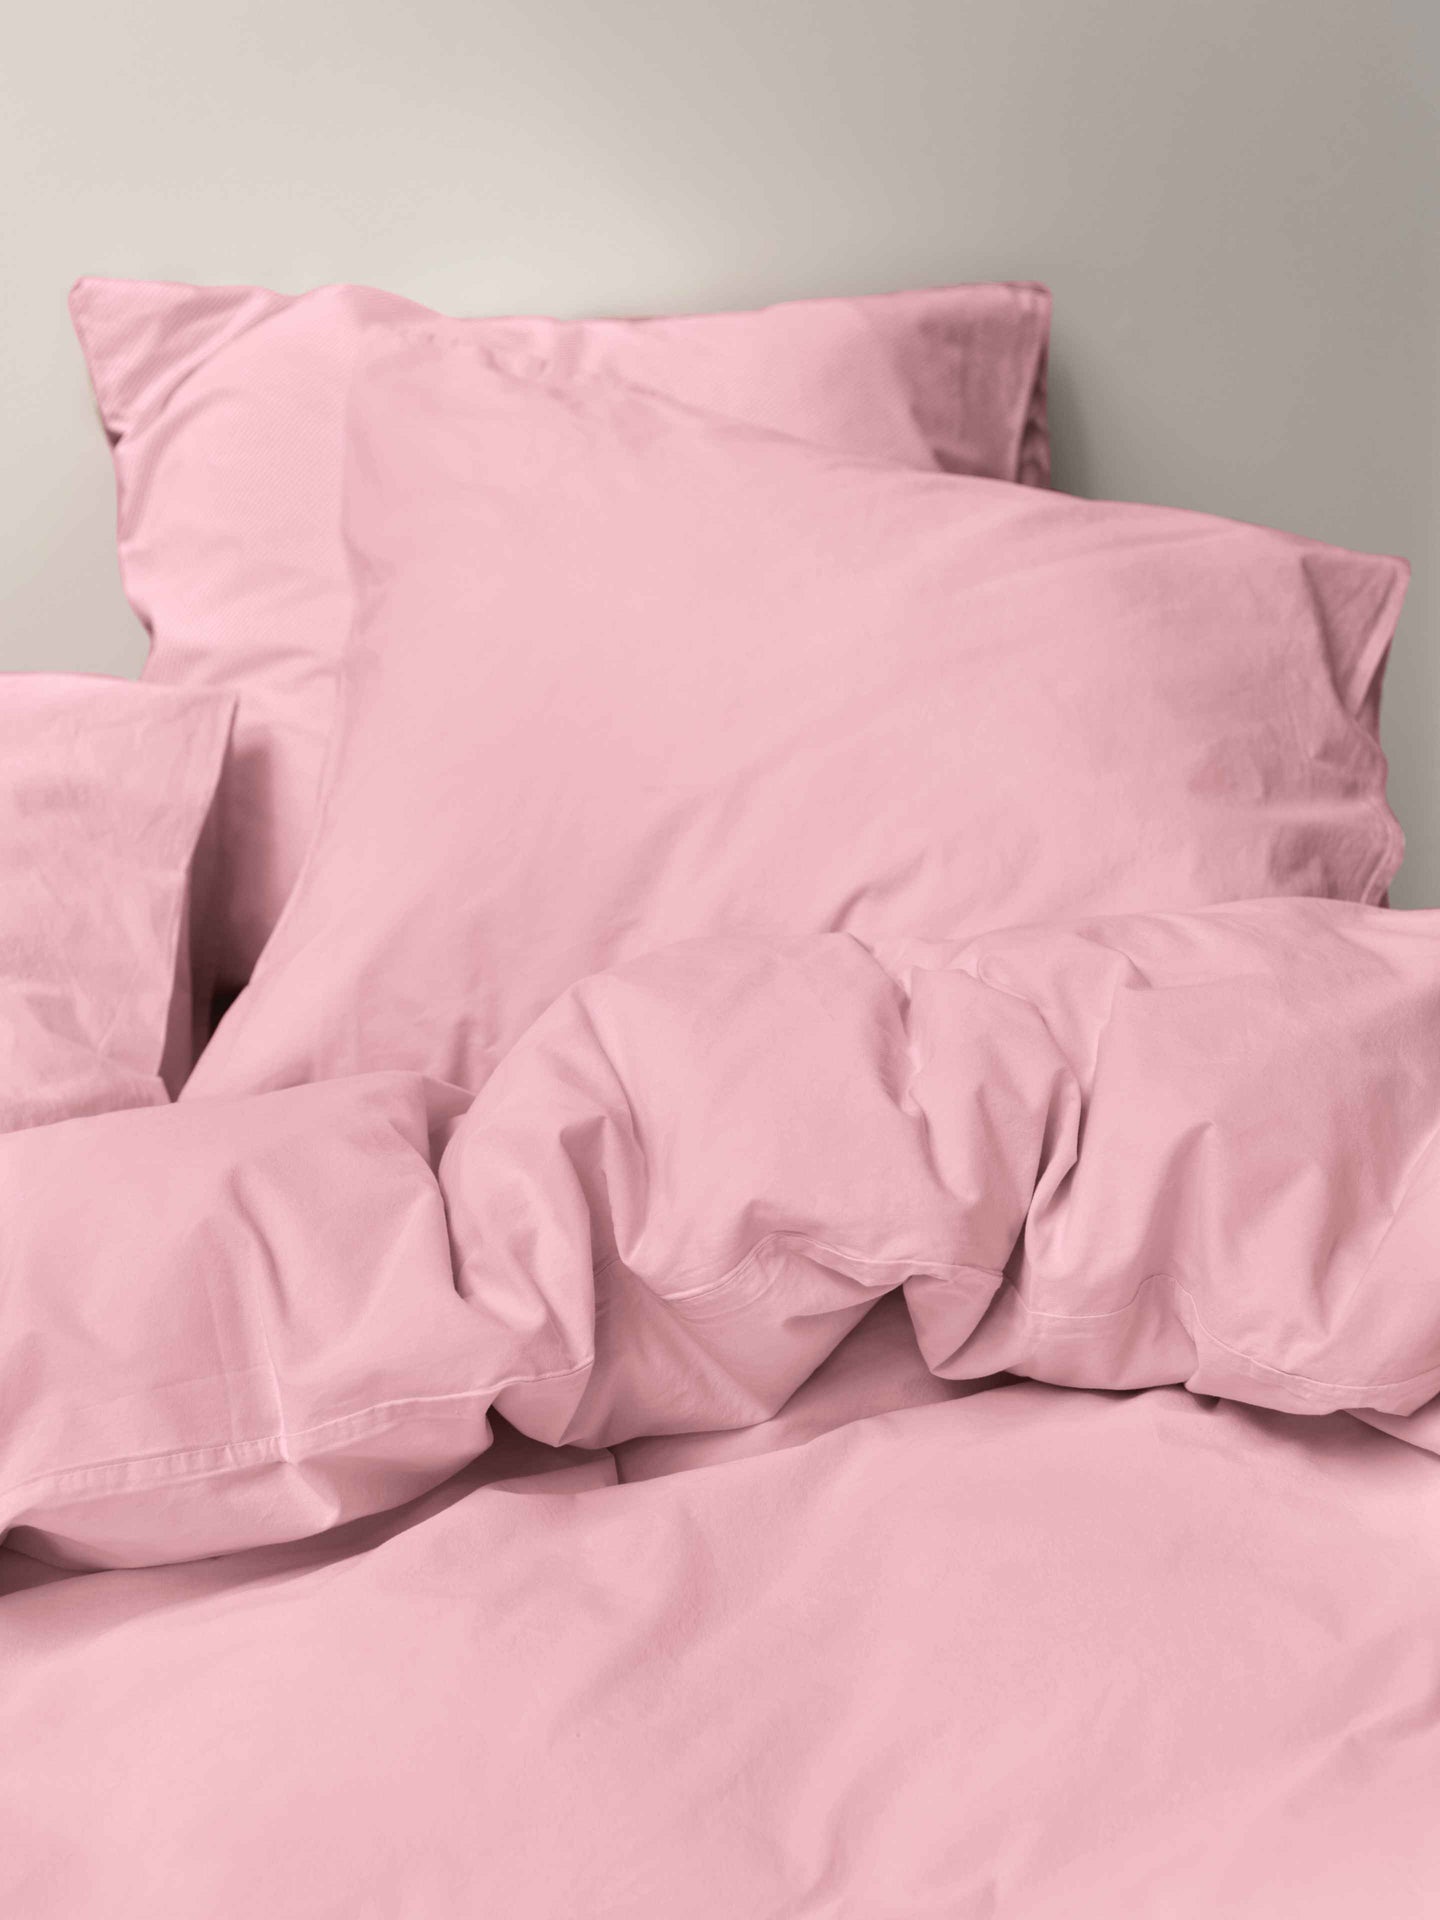 Pink pillowcase